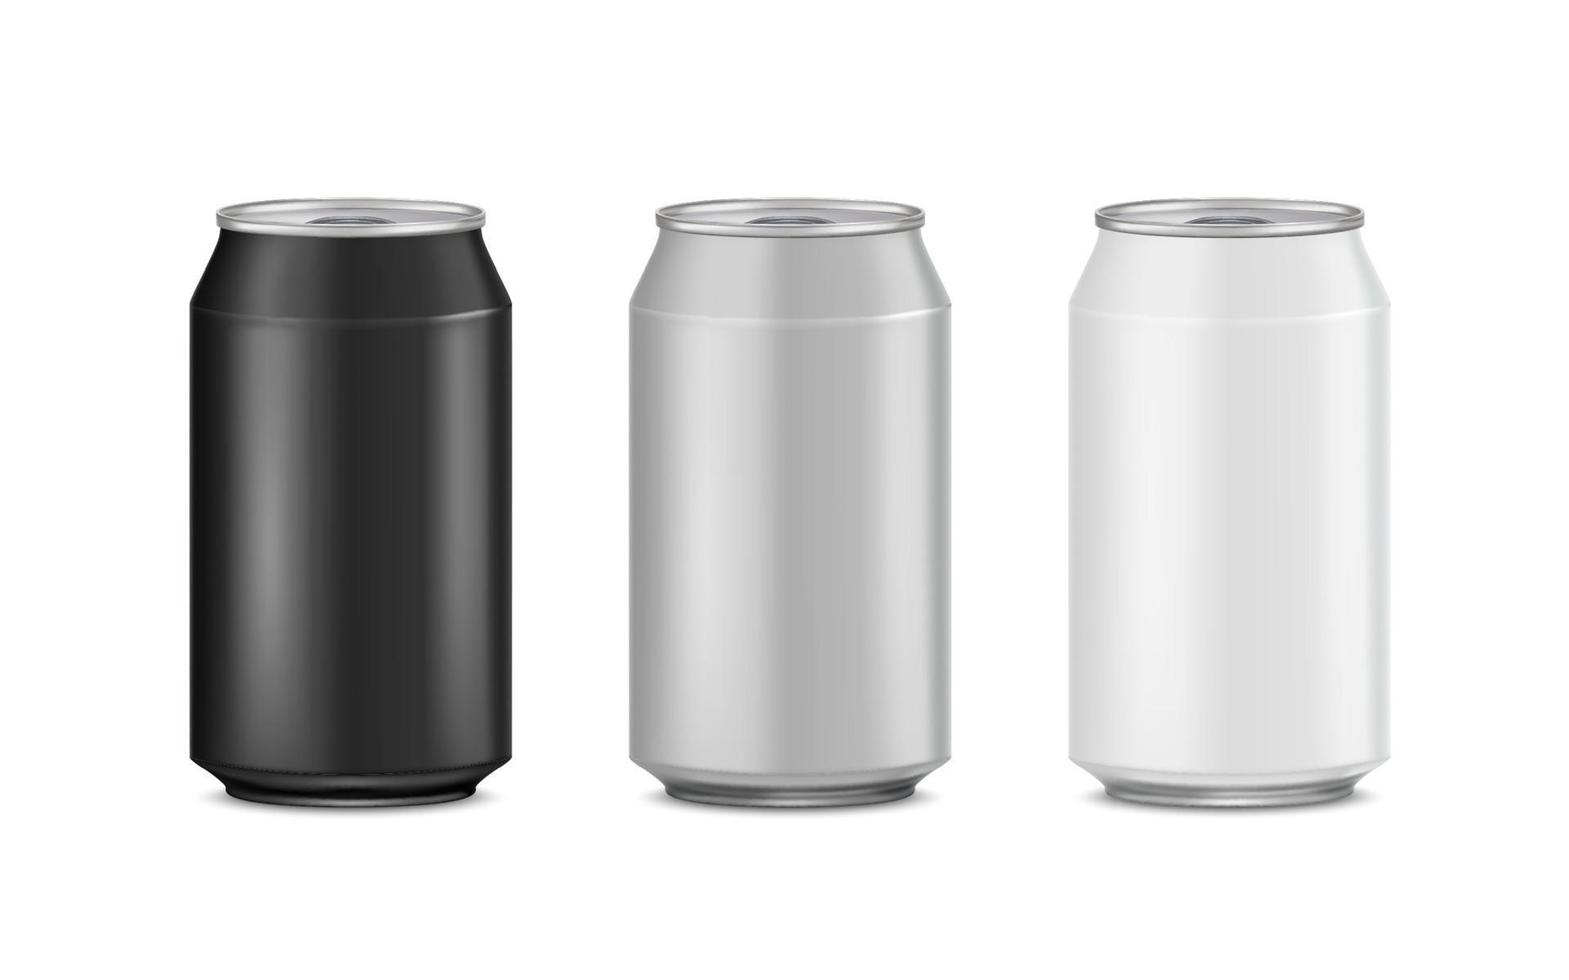 lattine di alluminio simulano il design della presentazione. realistico isolato su sfondo bianco. modello per birra, alcol, soda, bevanda energetica. 3d vettoriale eps10.